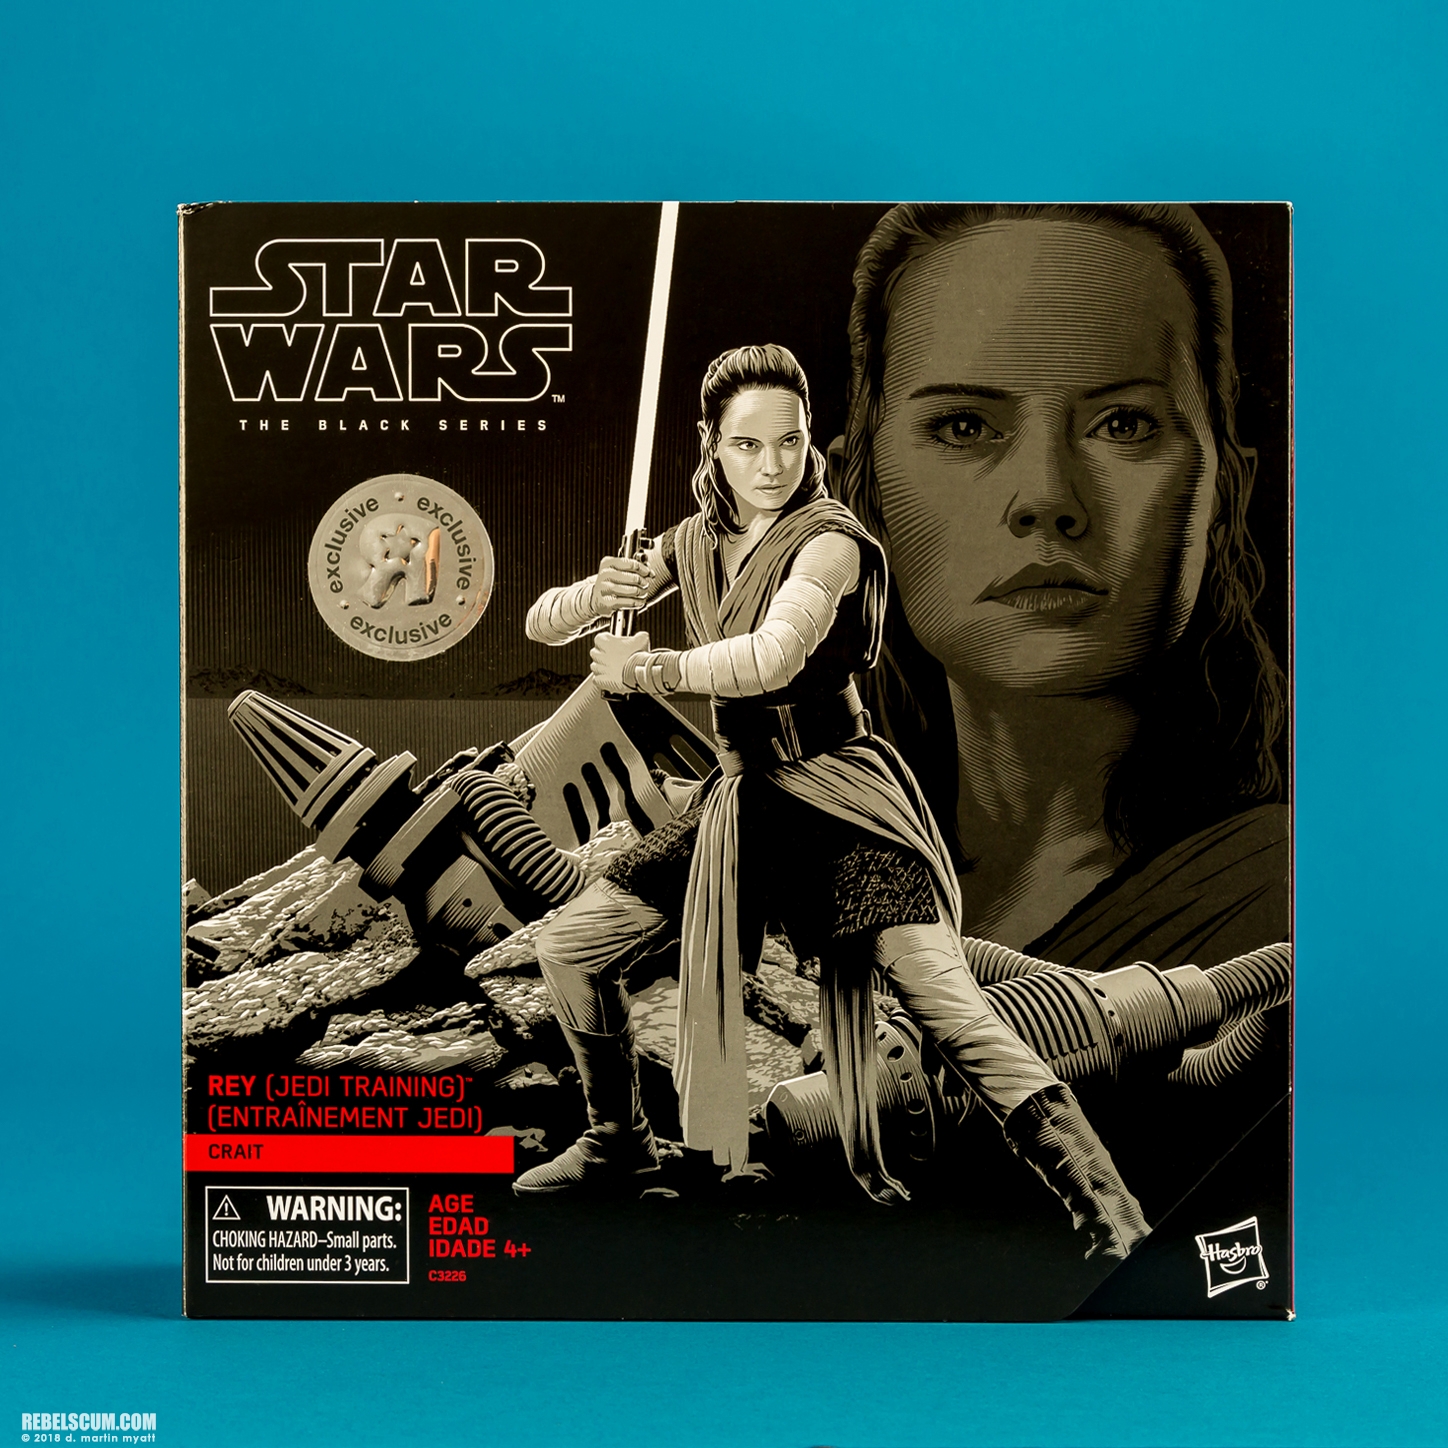 Rey-Jedi-Training-Crait-C3226-Star-Wars-The-Black-Series-010.jpg